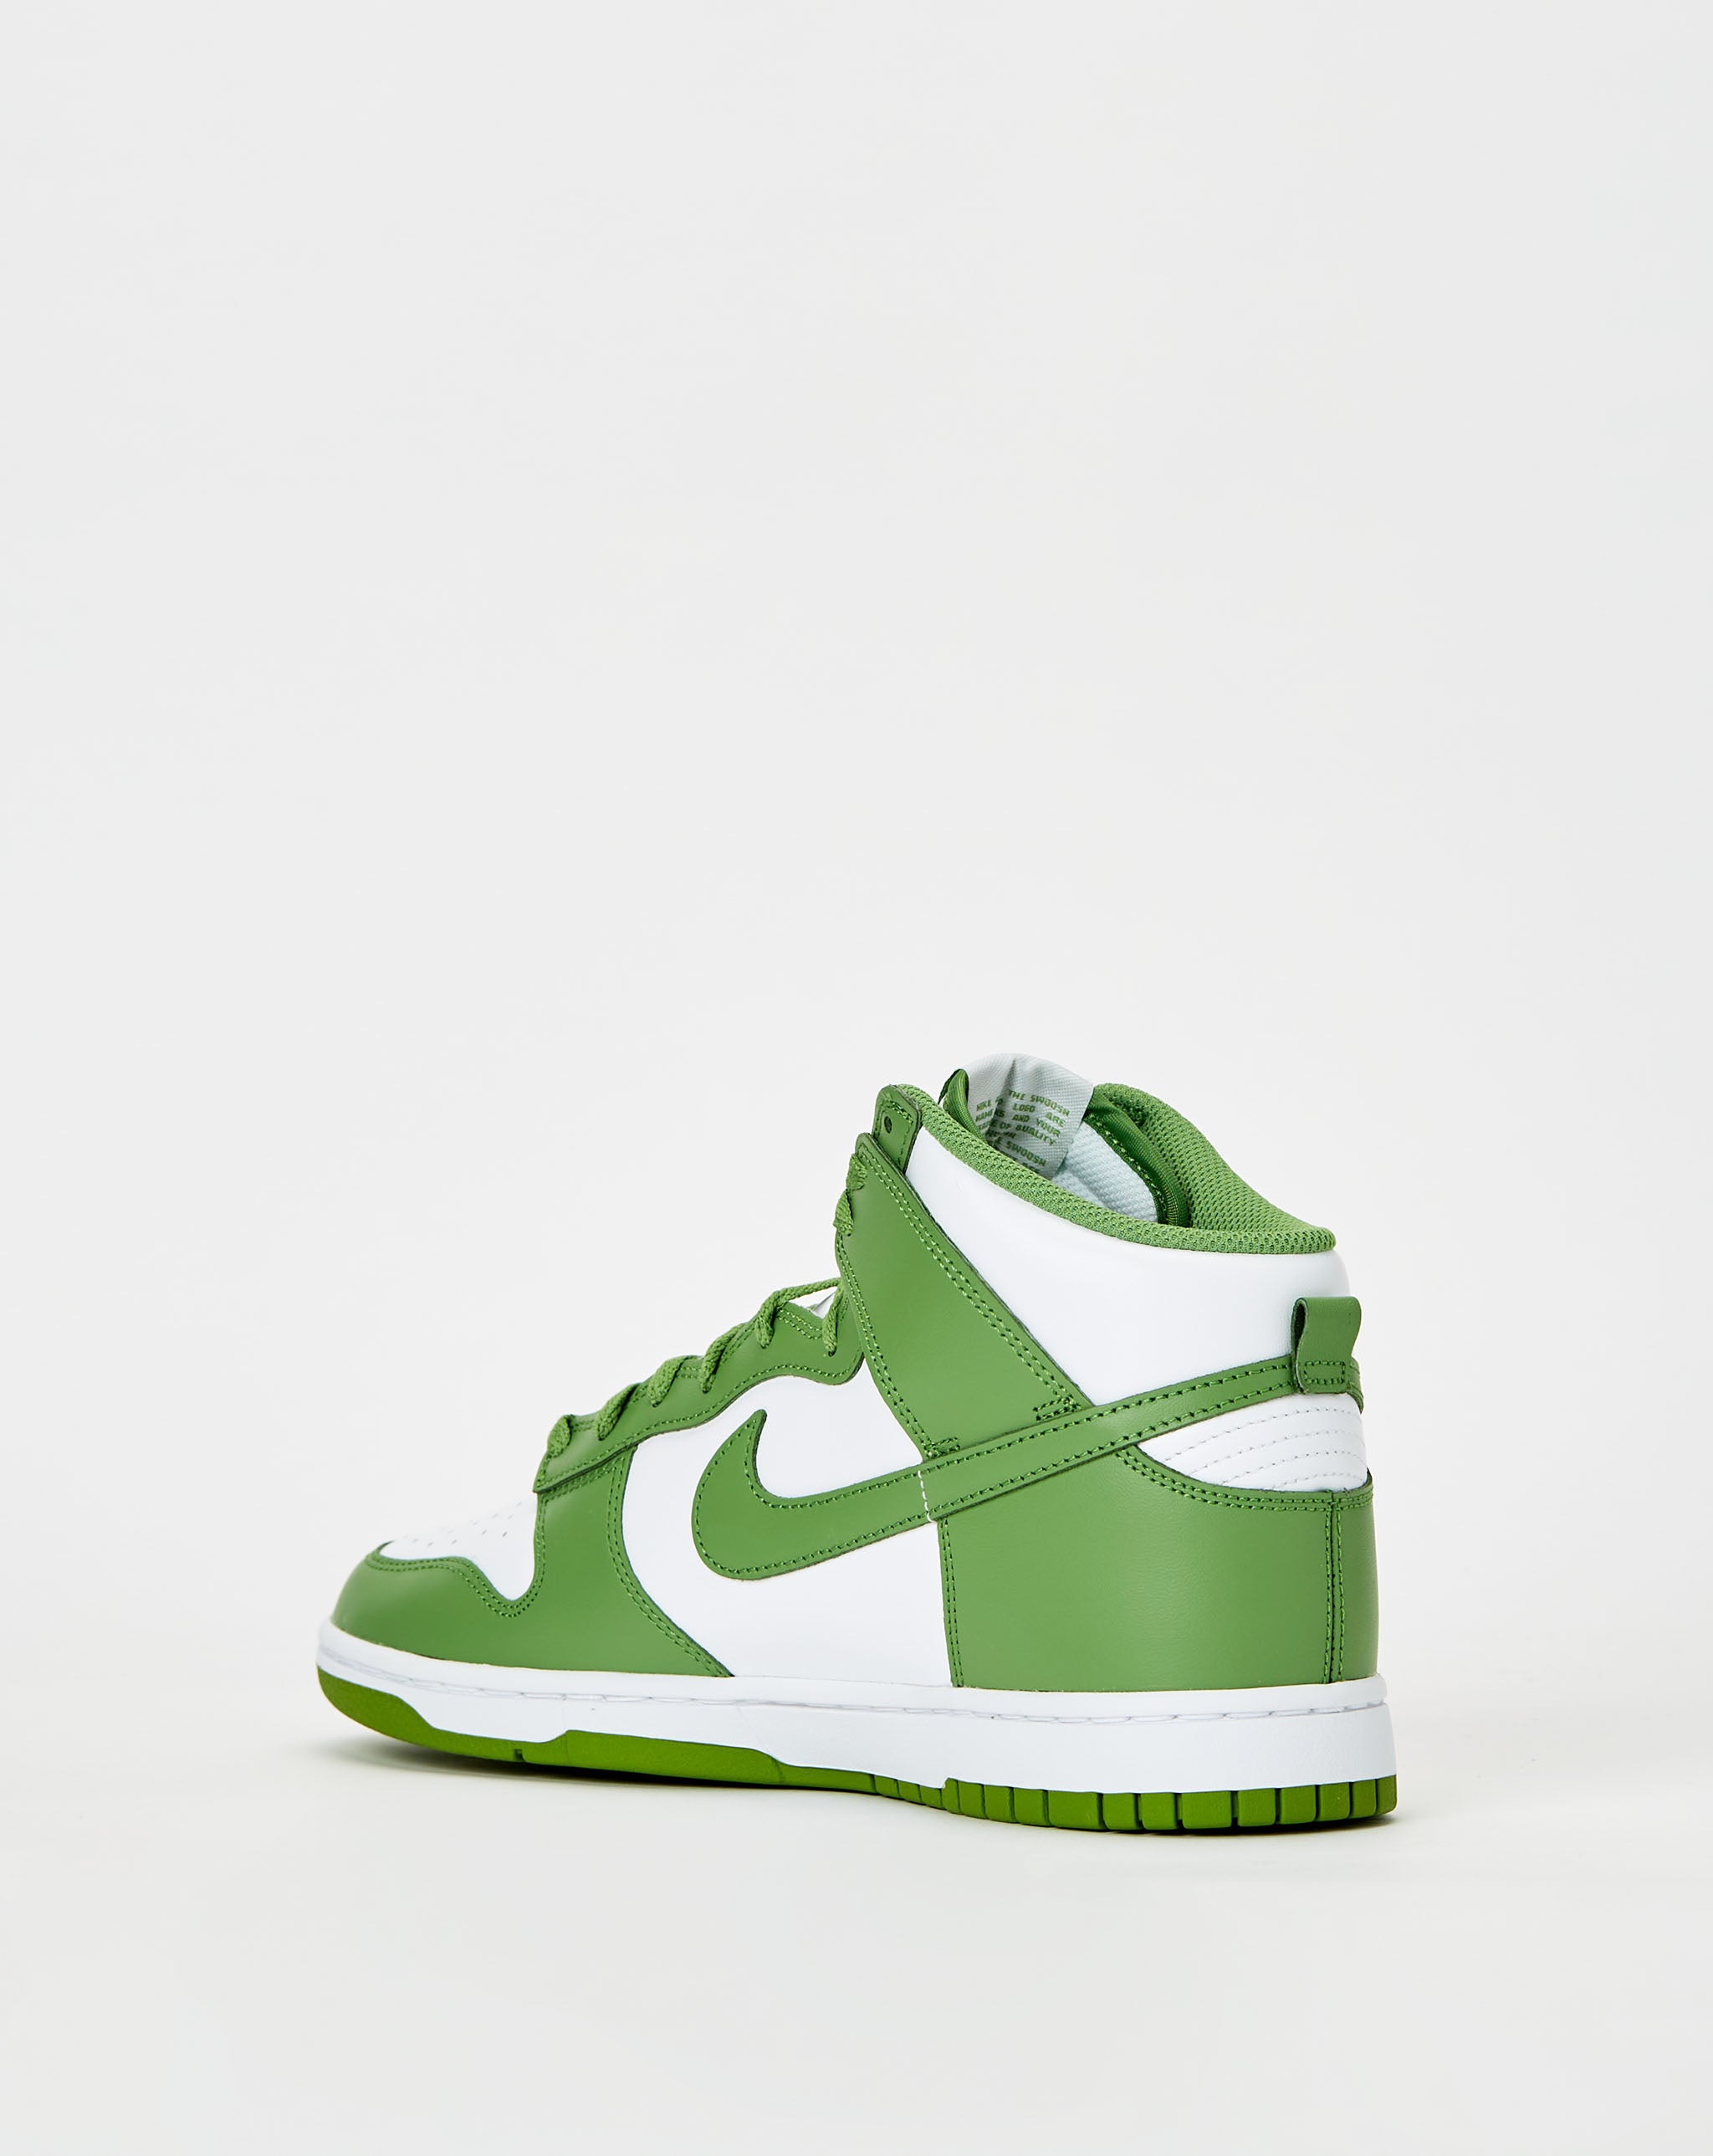 Nike Dunk High Retro 'Chlorophyll'  - Cheap Urlfreeze Jordan outlet